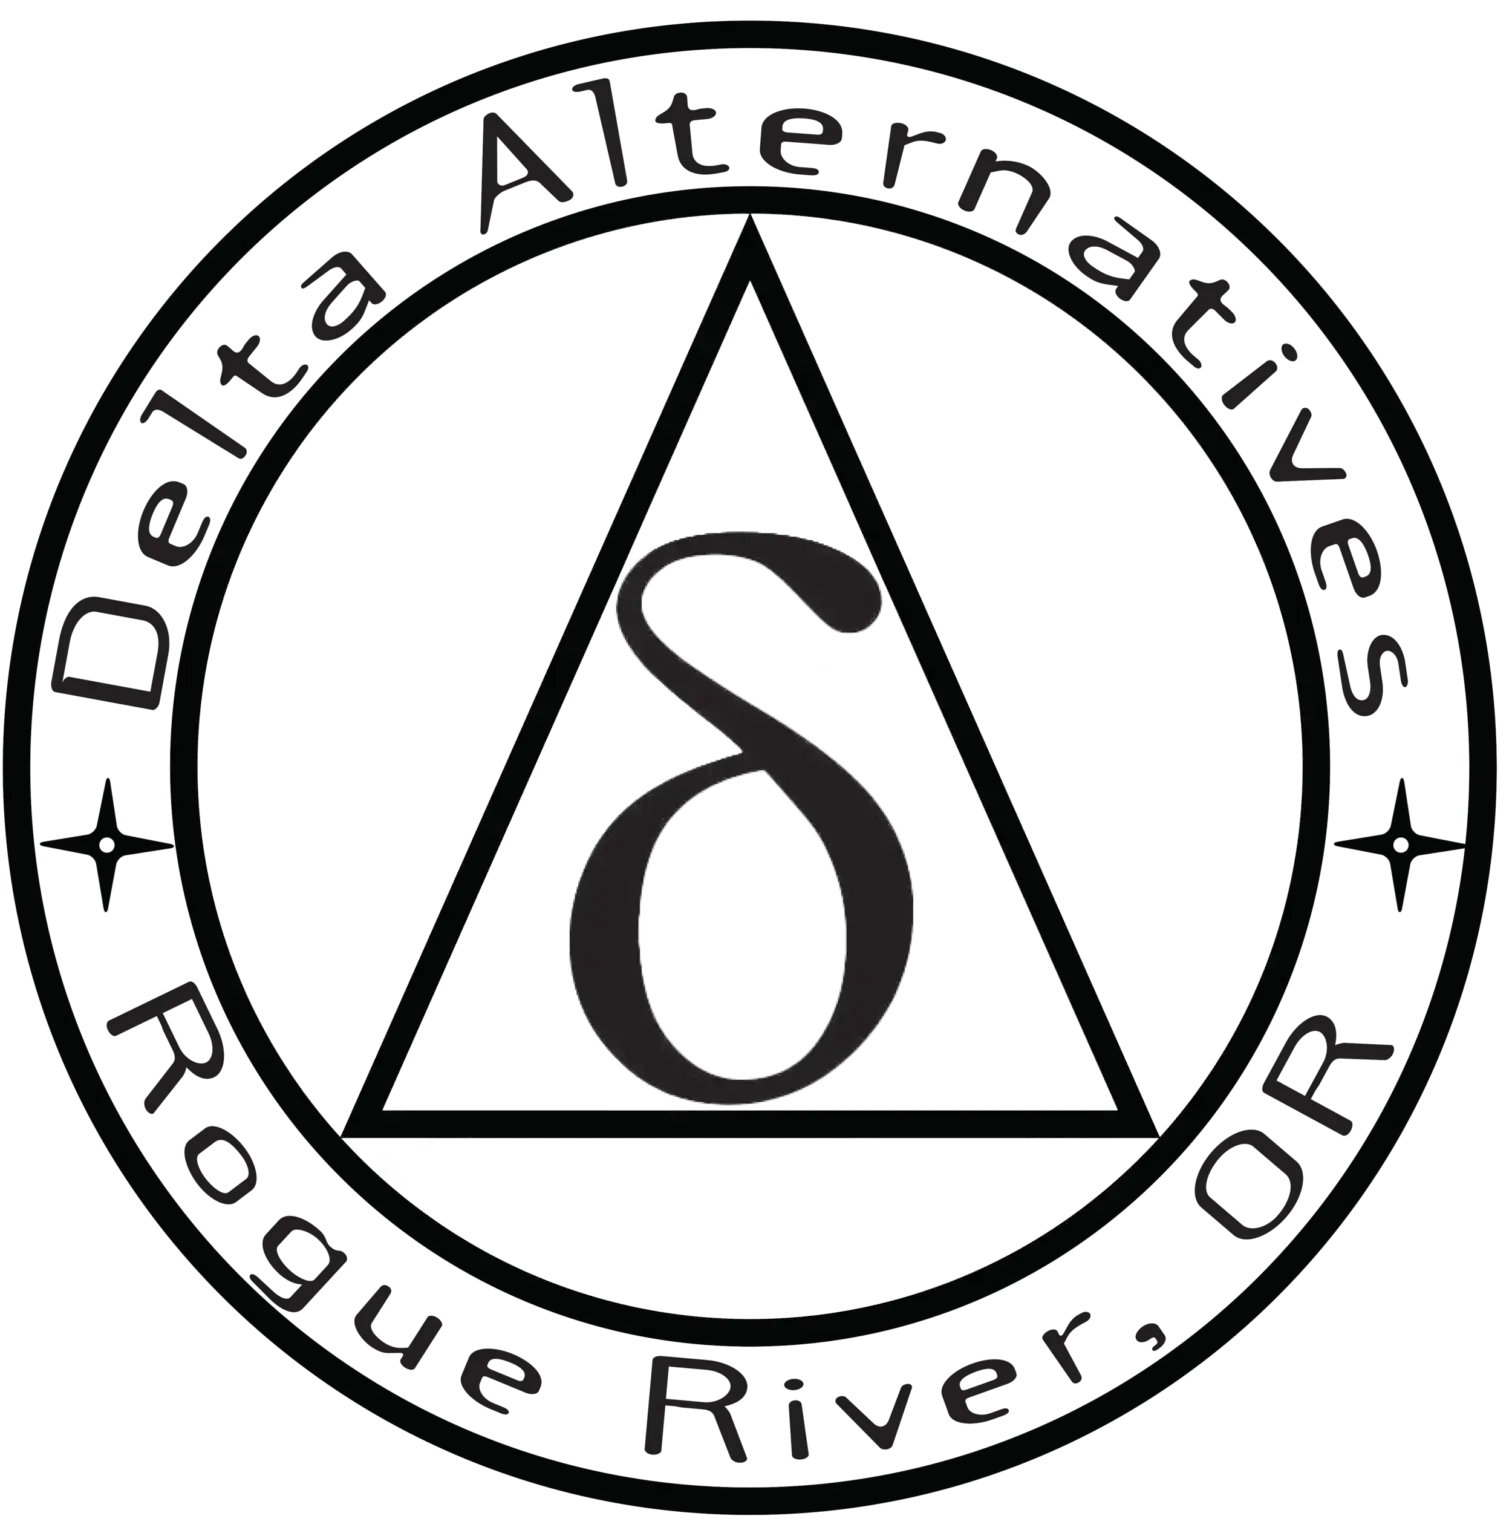 Delta Alternatives